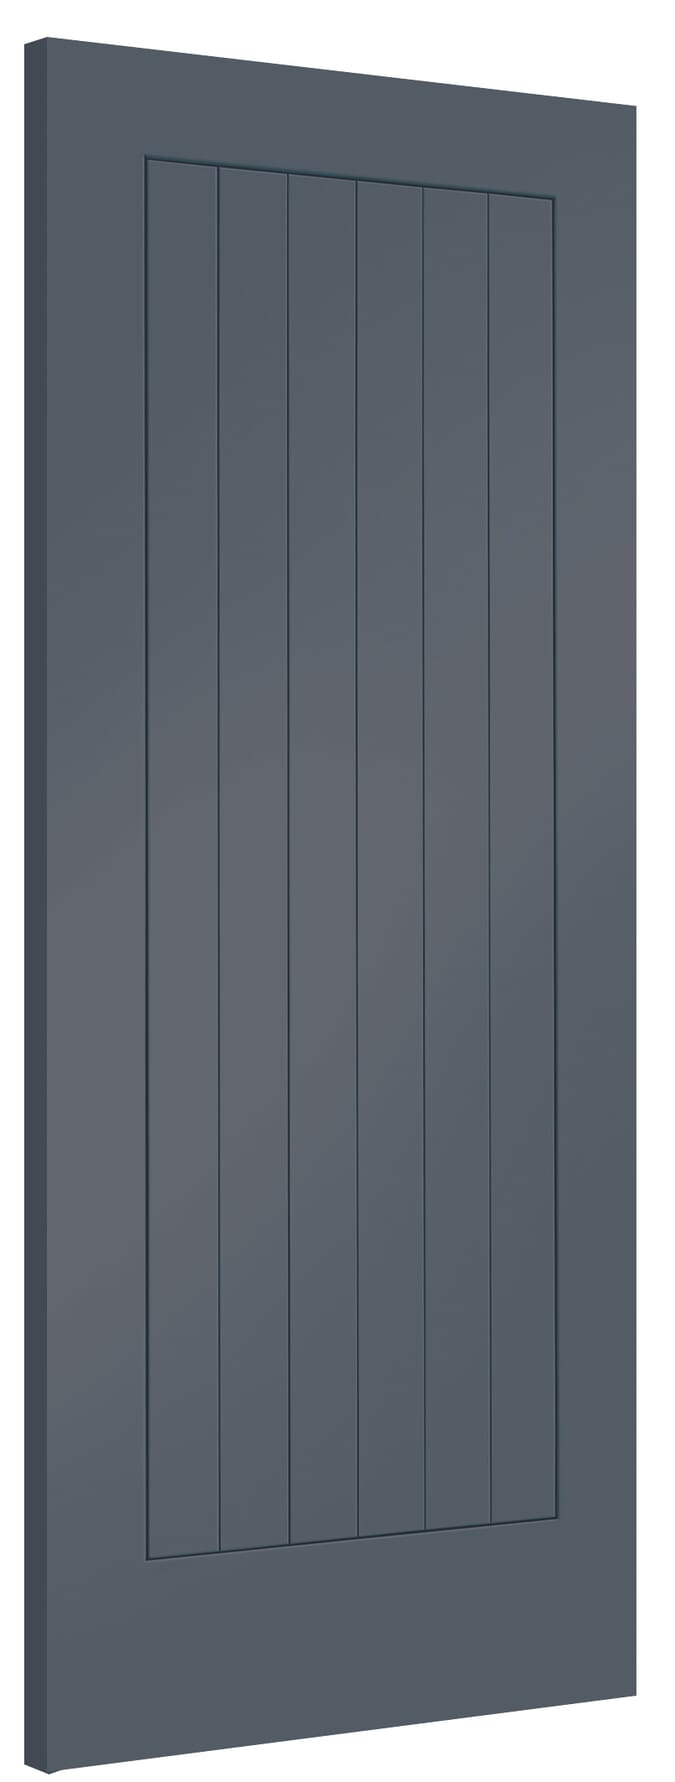 838x1981x35mm (33") Suffolk Cinder Grey Internal Doors